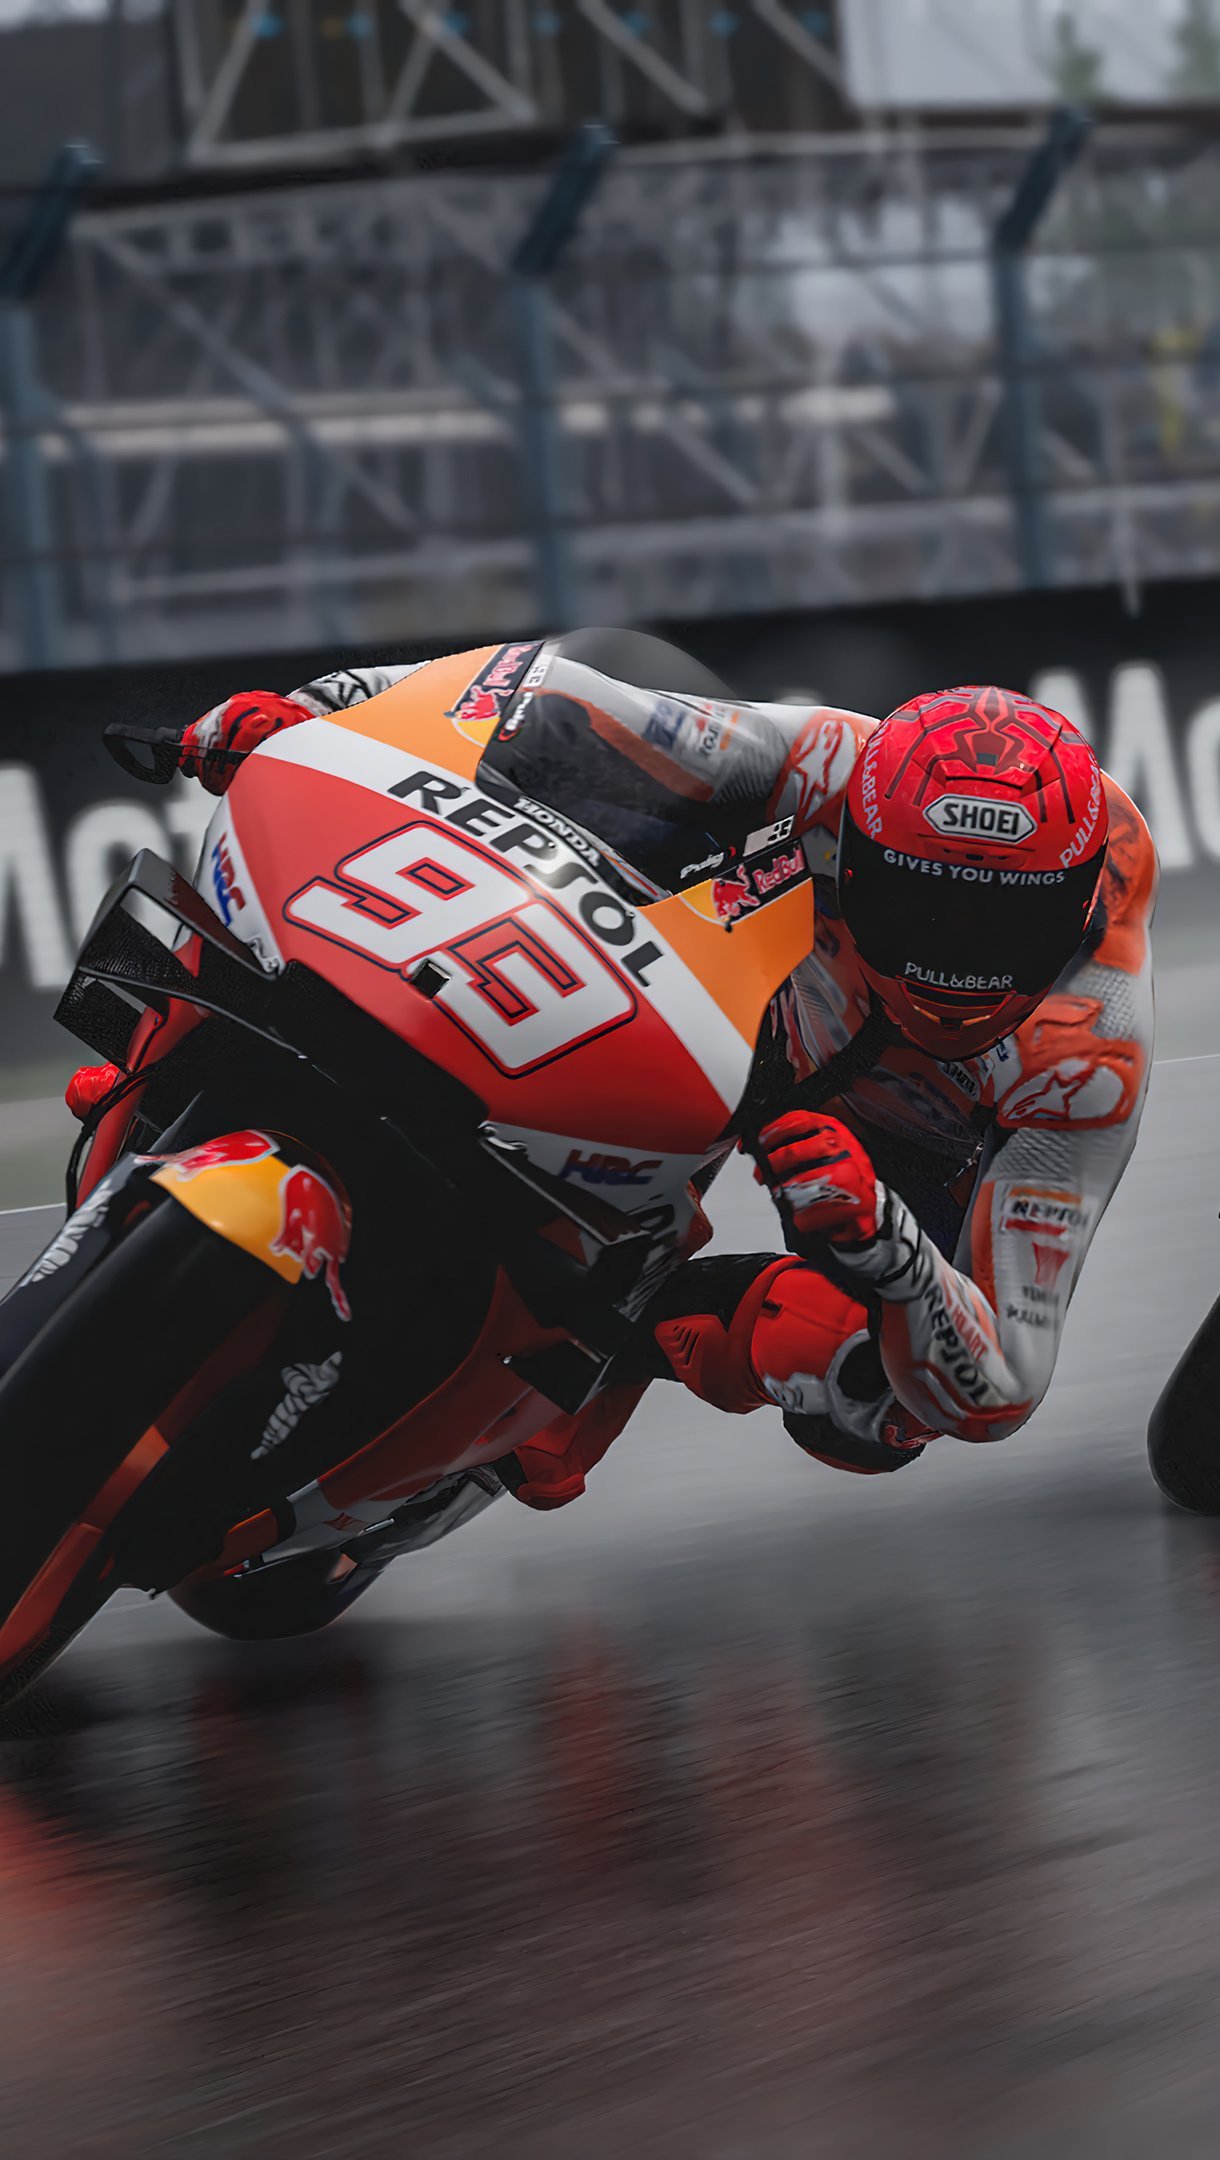 Wallpaper Race from MotoGP Vertical